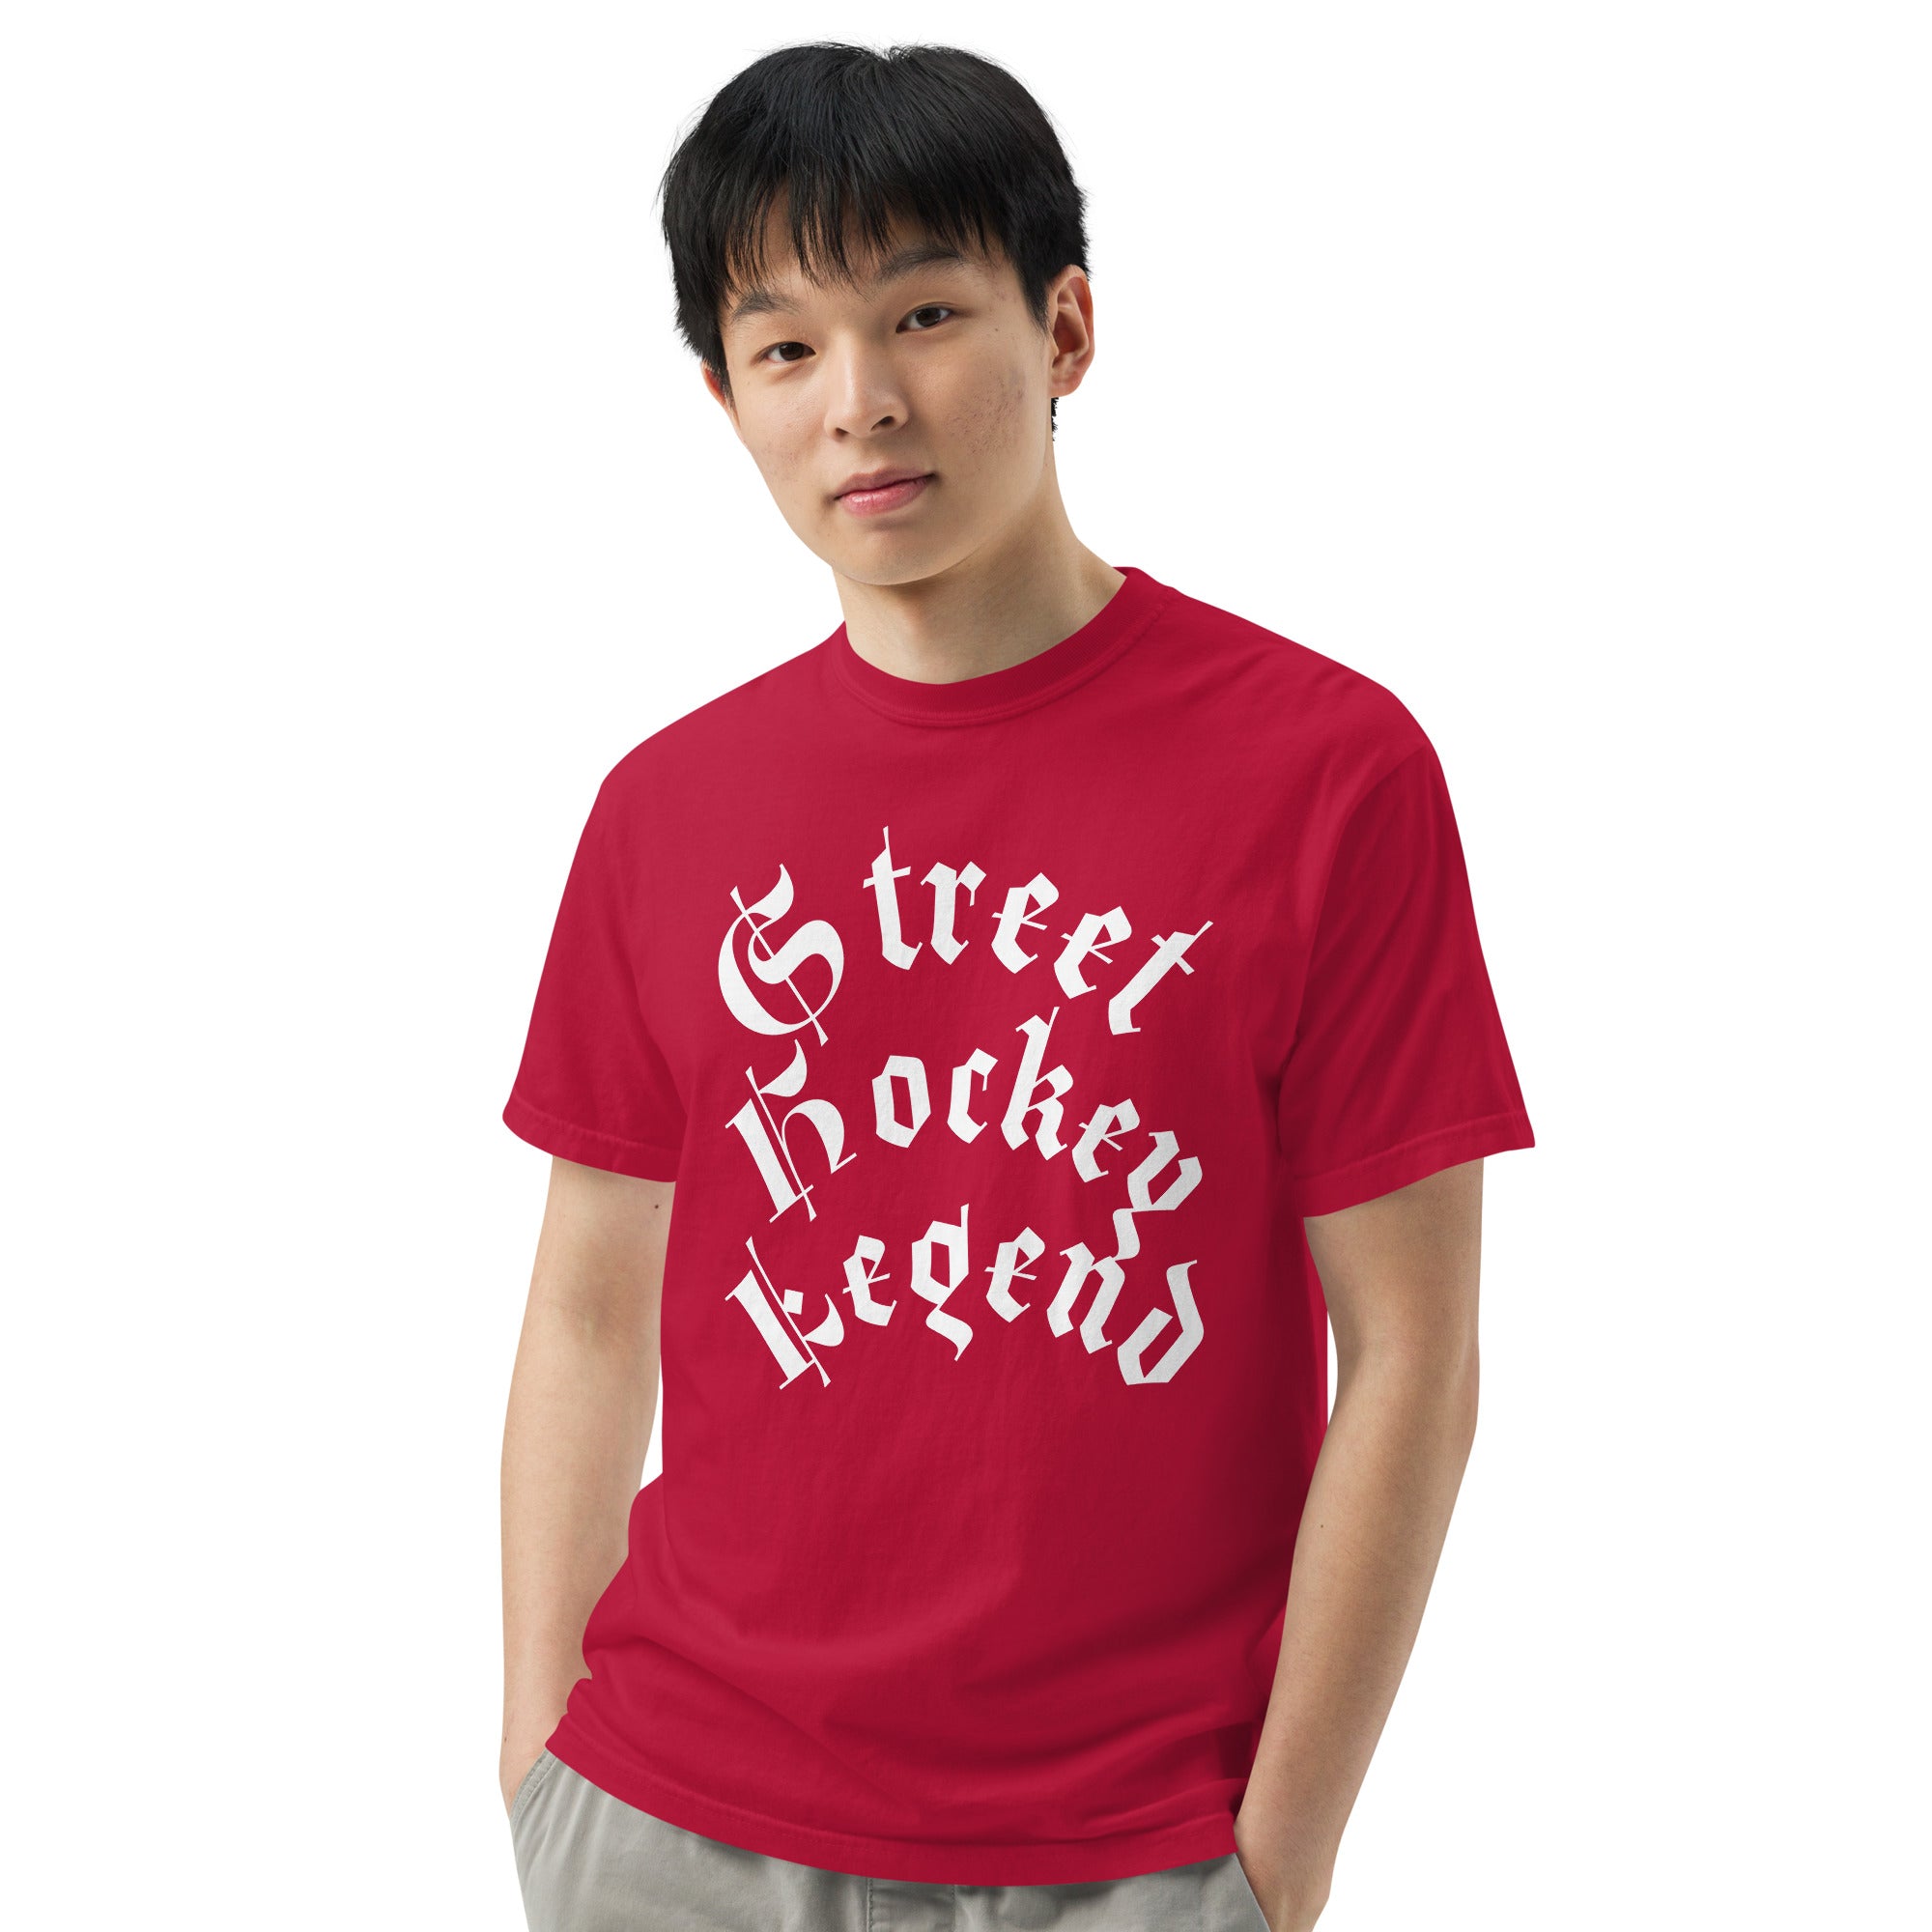 Street Legend - Men’s garment-dyed heavyweight t-shirt